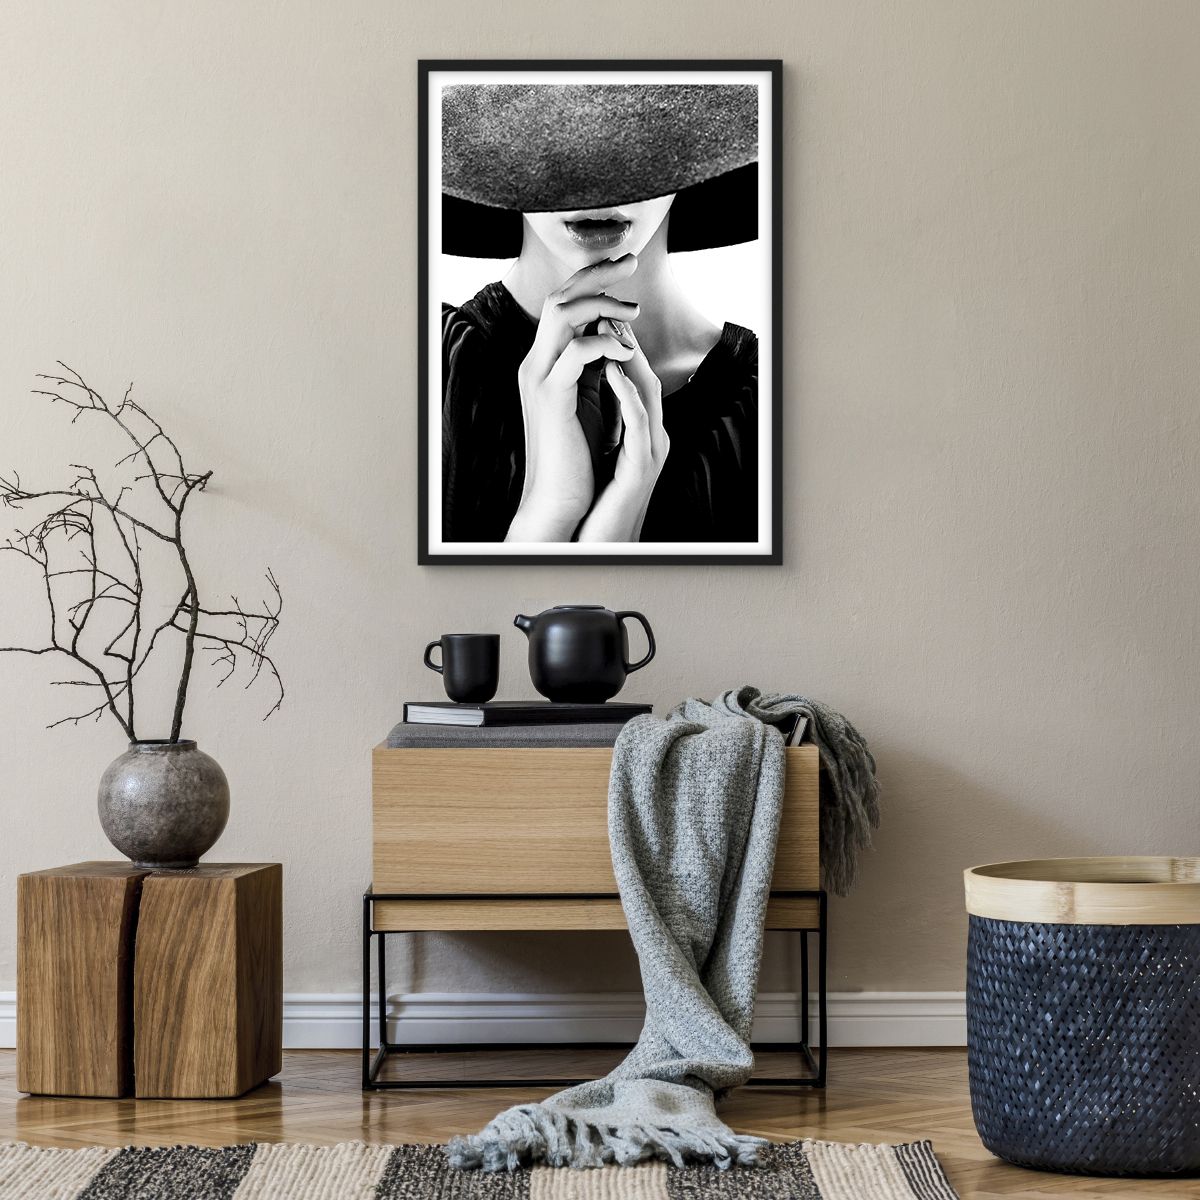 Affiche dans un cadre noir Femme Au Chapeau, Affiche dans un cadre noir Mains Féminines, Affiche dans un cadre noir Mode, Affiche dans un cadre noir Modèle, Affiche dans un cadre noir Noir Et Blanc